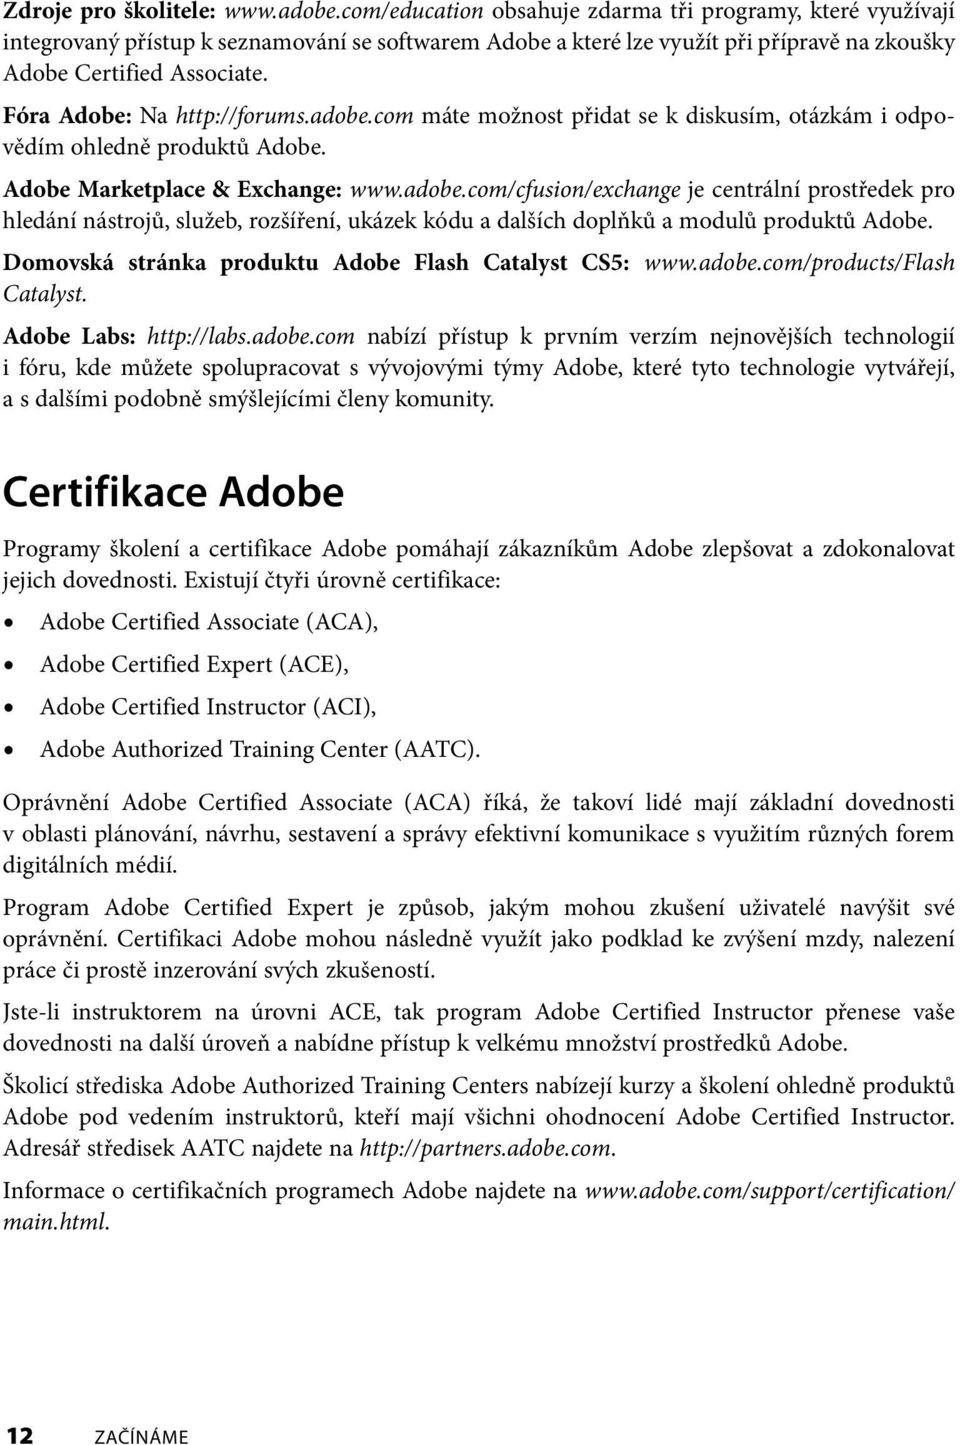 Fóra Adobe: Na http://forums.adobe.com máte možnost přidat se k diskusím, otázkám i od povědím ohledně produktů Adobe. Adobe Marketplace & Exchange: www.adobe.com/cfusion/exchange je centrální prostředek pro hledání nástrojů, služeb, rozšíření, ukázek kódu a dalších doplňků a modulů produktů Adobe.